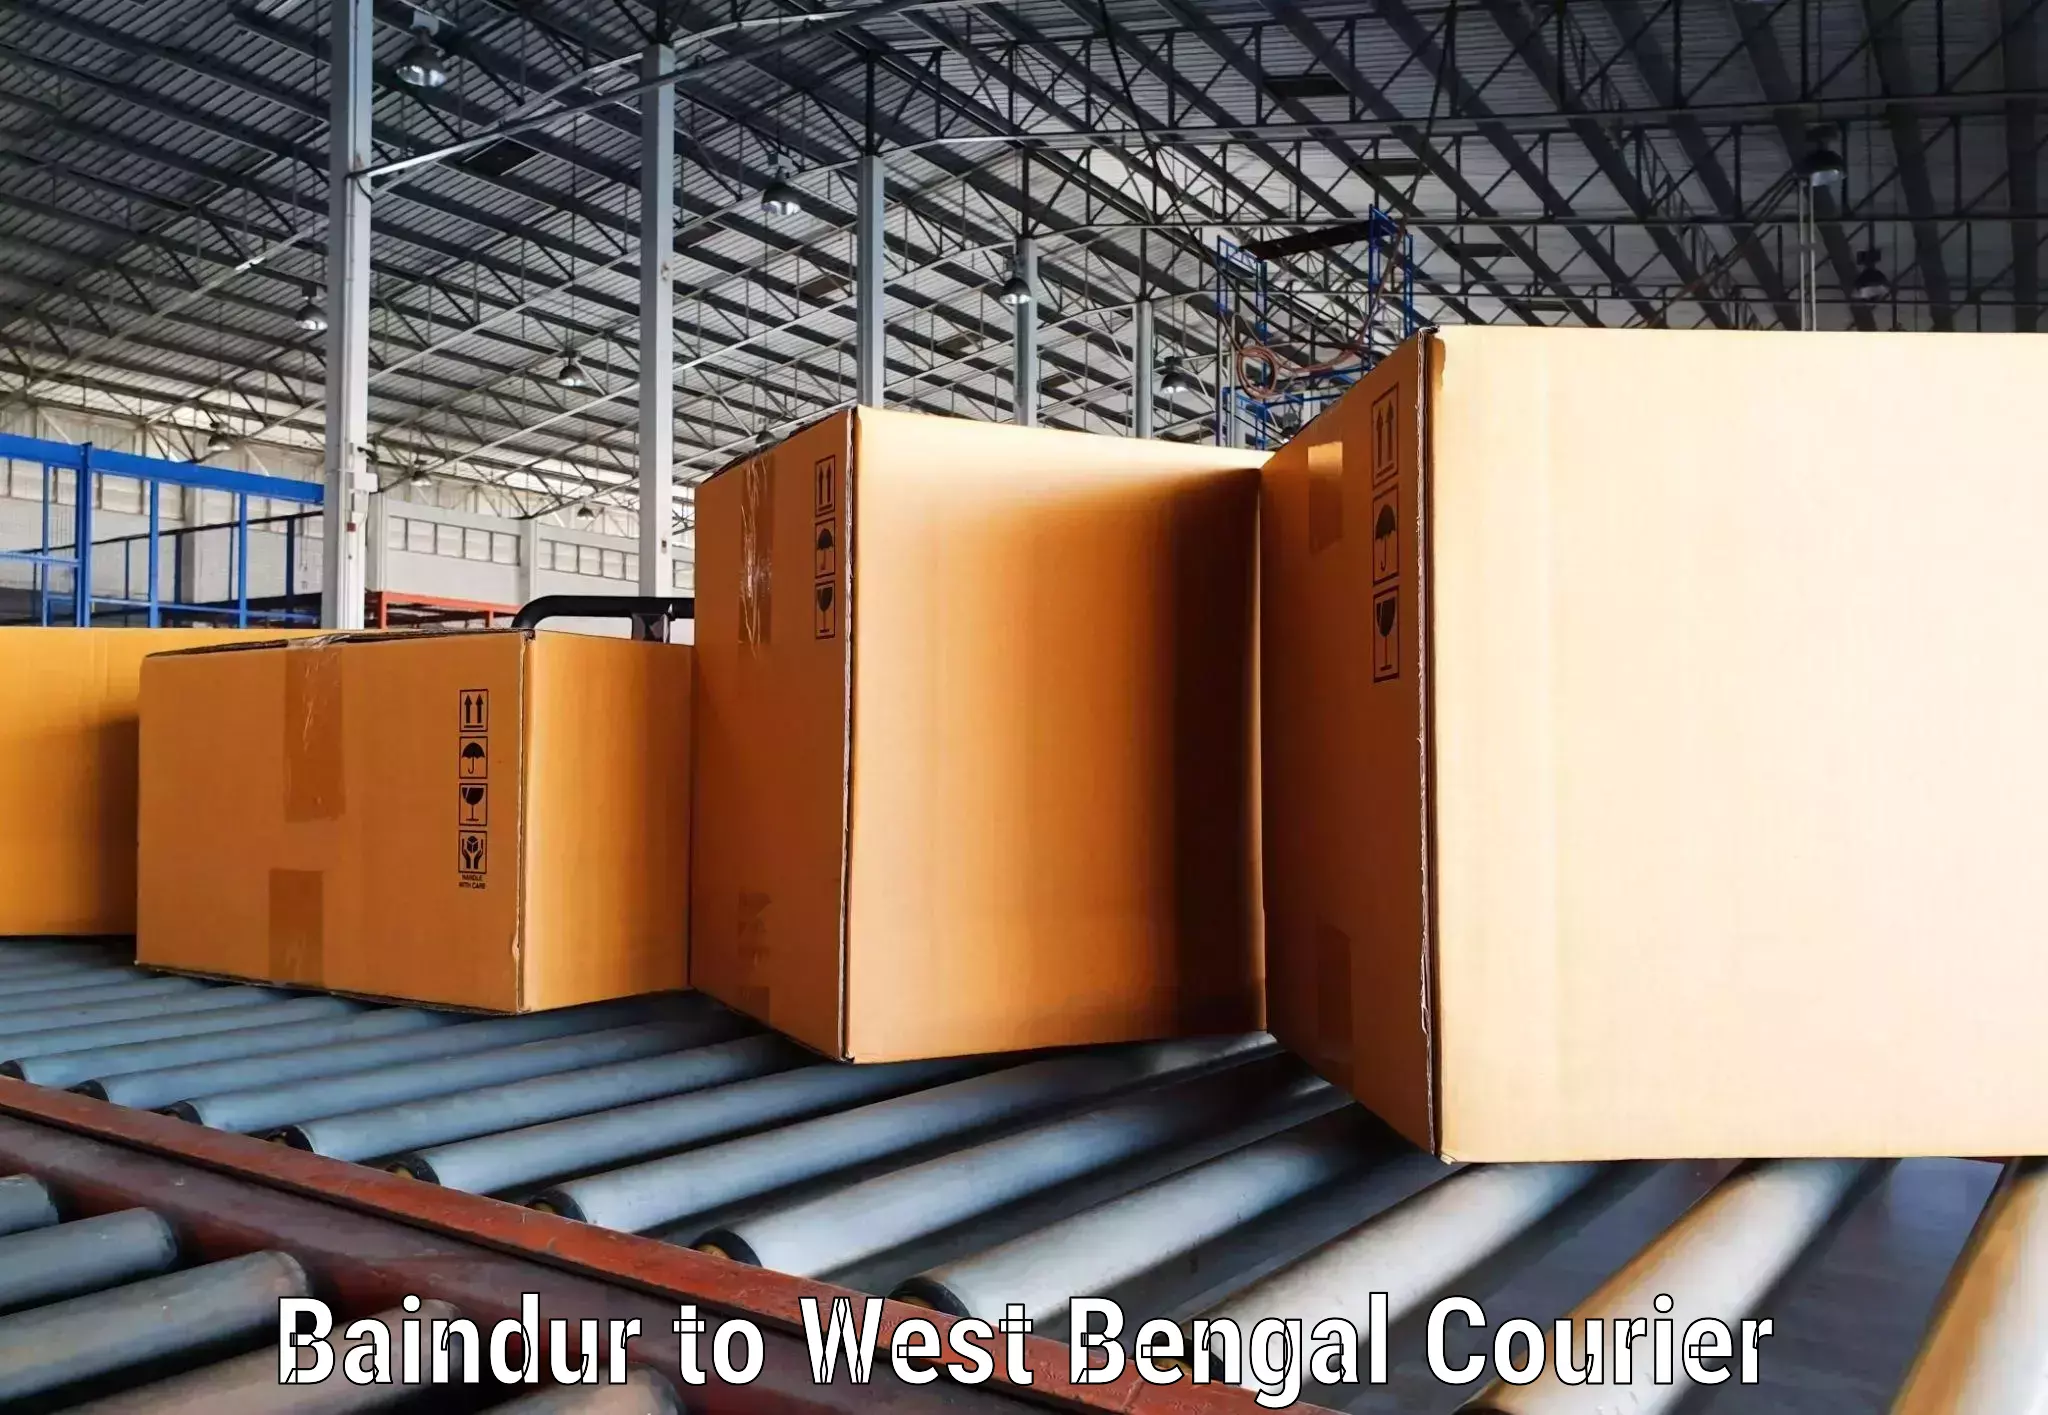 Smart shipping technology Baindur to Ama Dubi